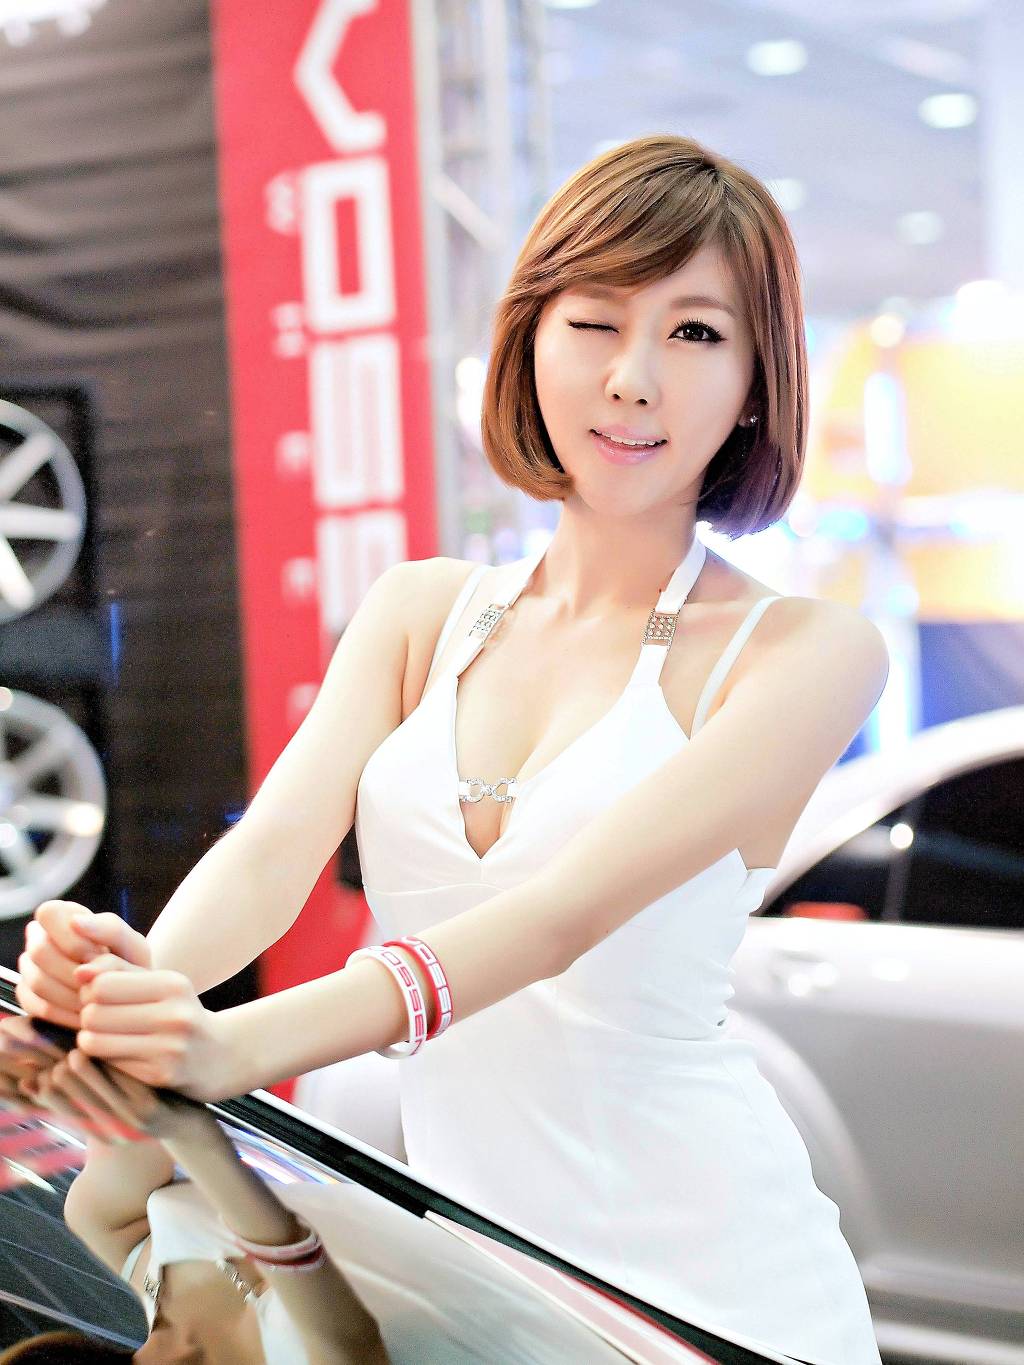 Xxx Nude Girls Choi Byeol Yee Seoul Auto Salon 2012